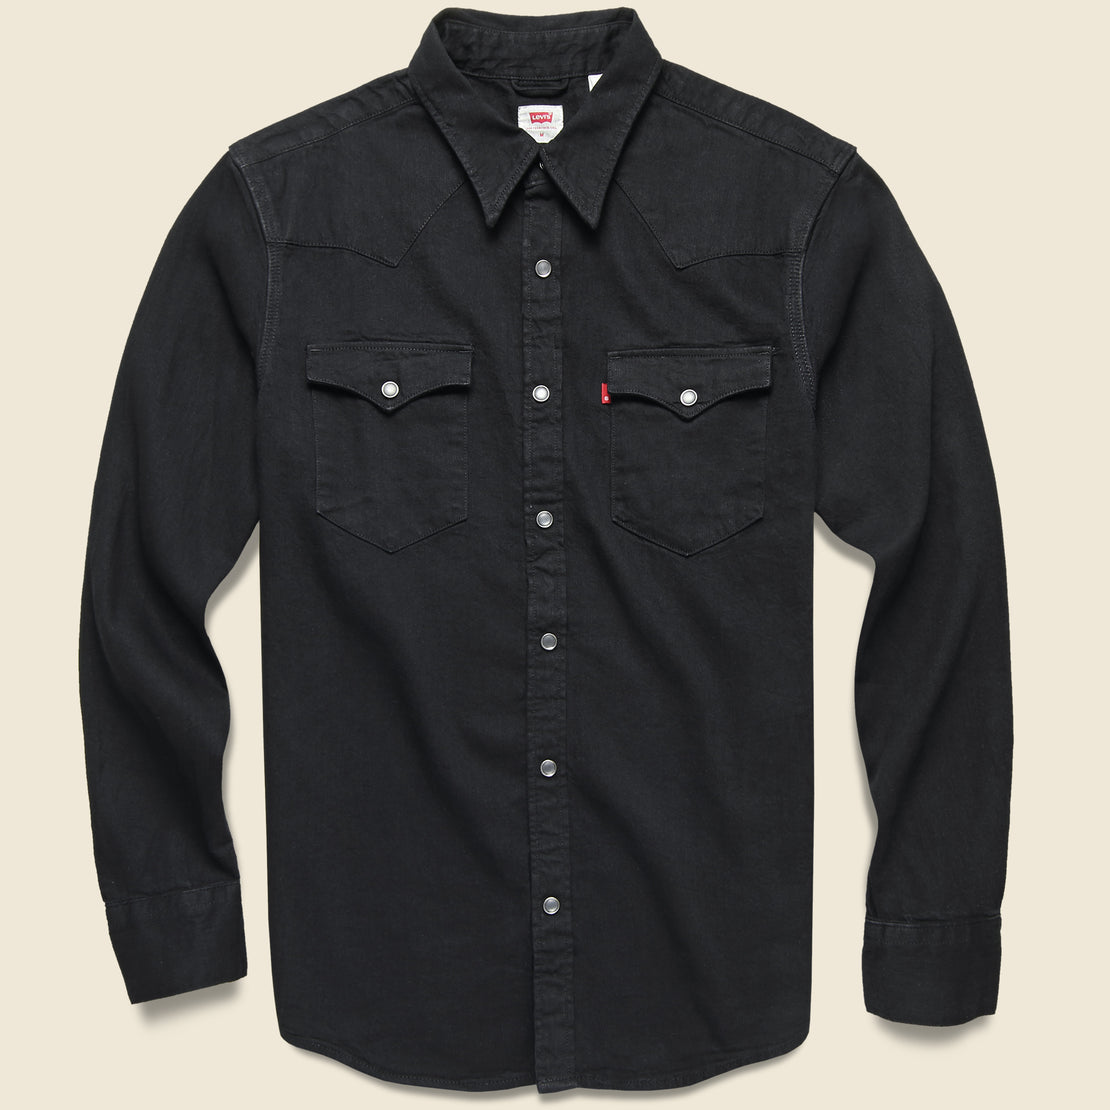 Levis Premium Barstow Western Shirt - Marble Black Denim